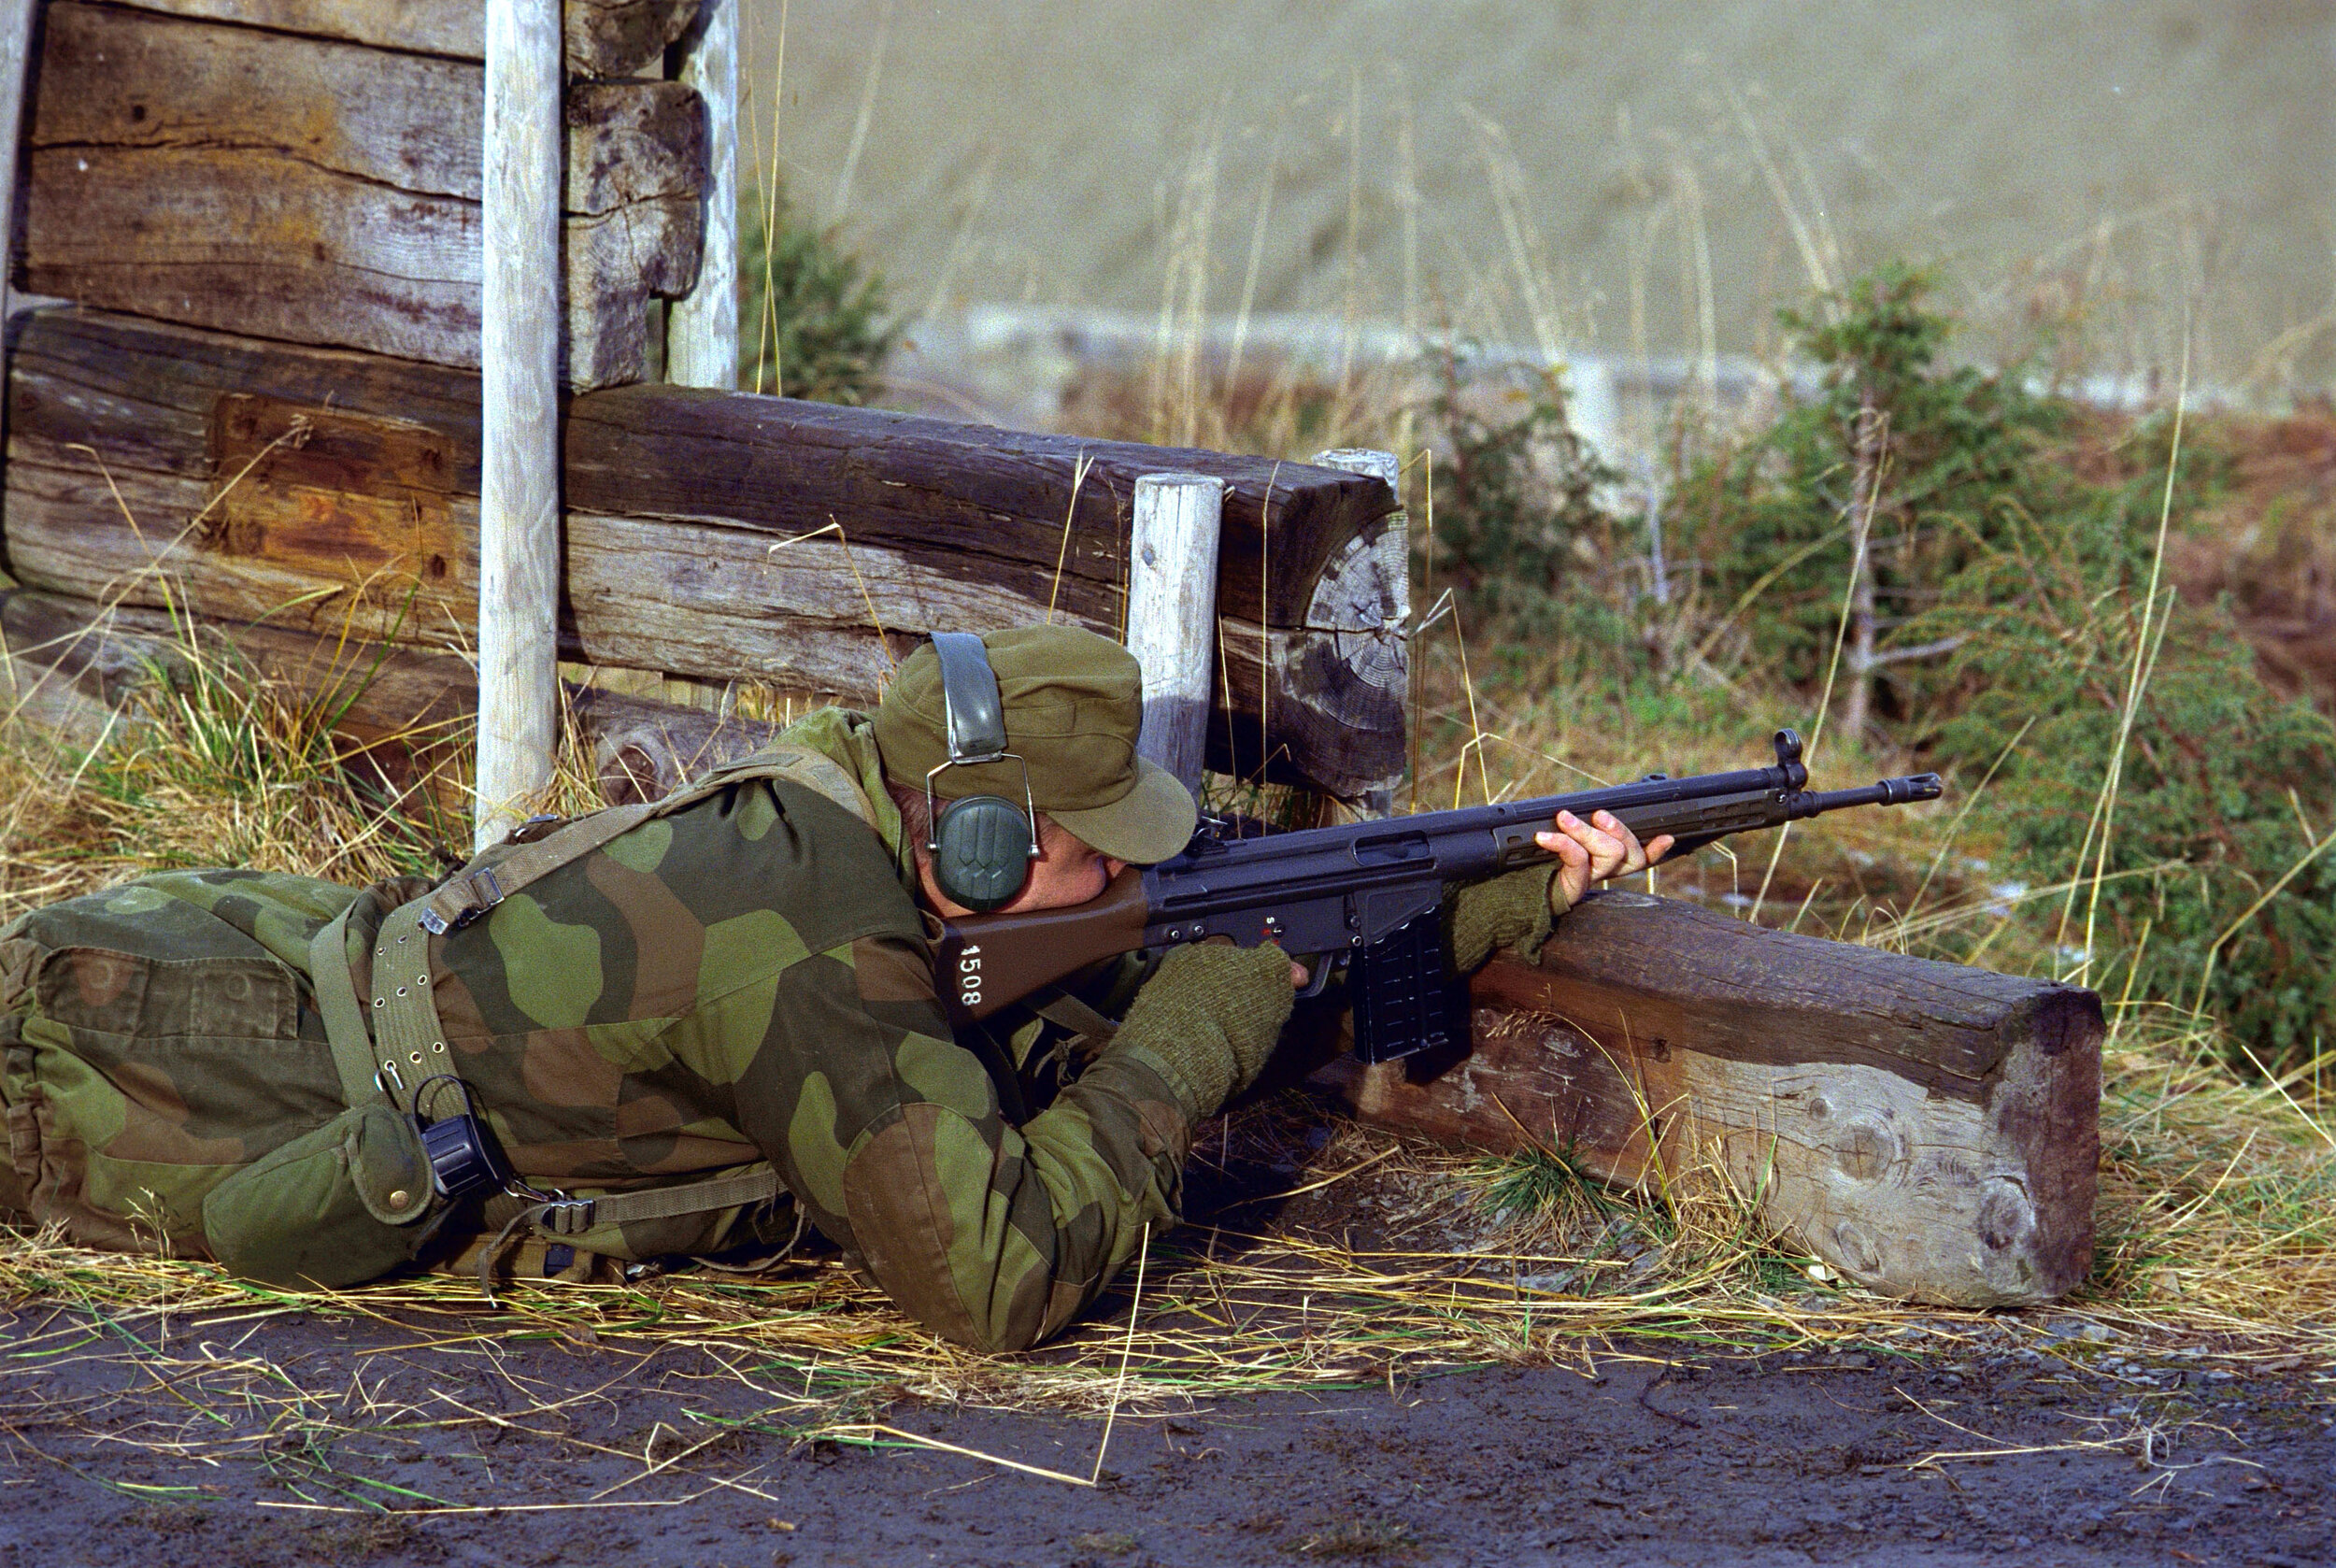  Trainee at basic rifle training, 1998 